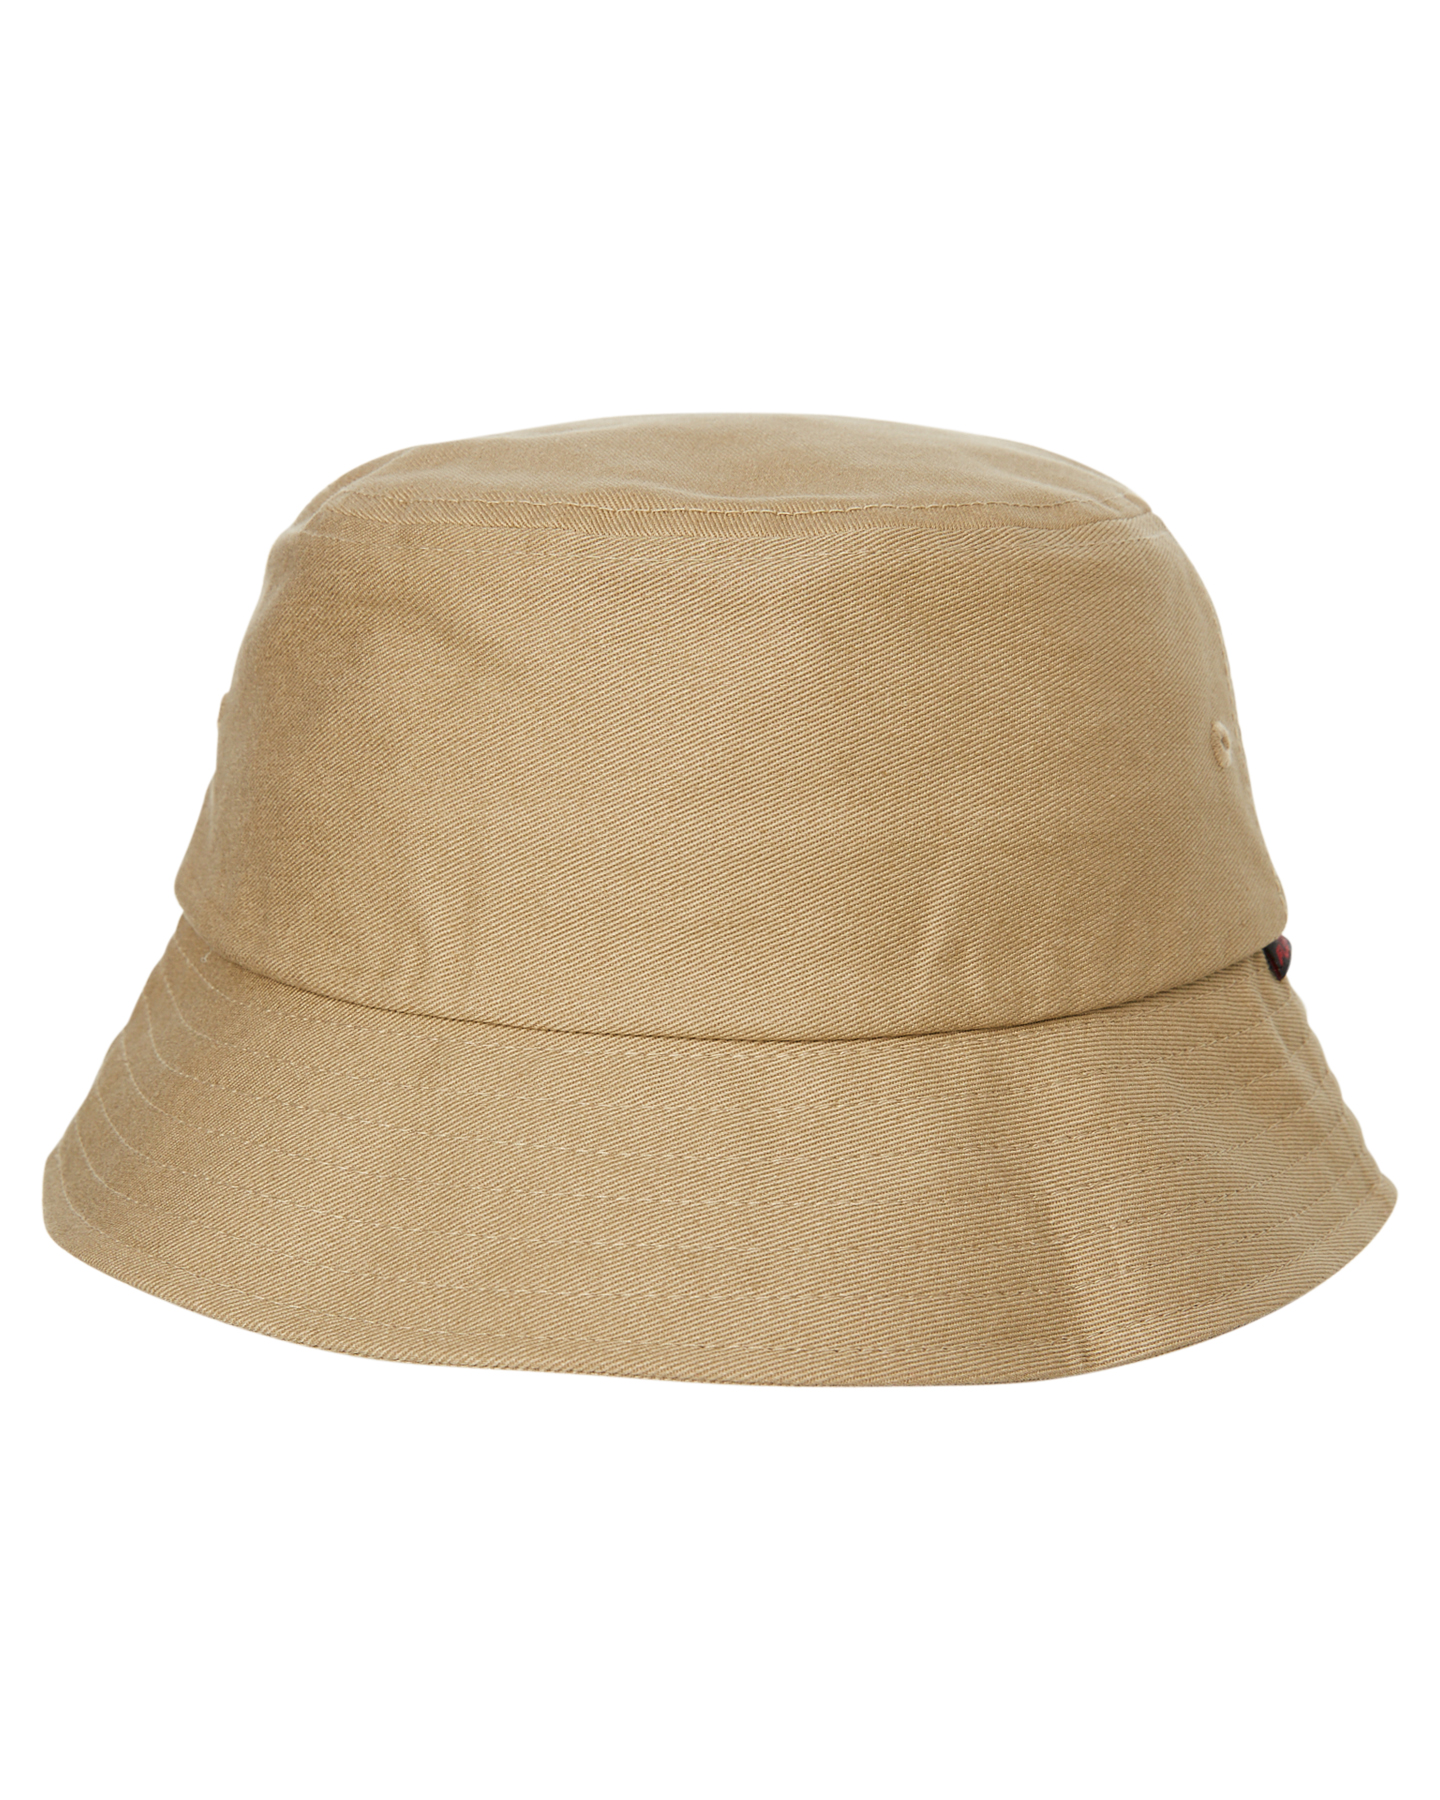 Flex Fit Flexfit Bucket Hat - Tan | SurfStitch